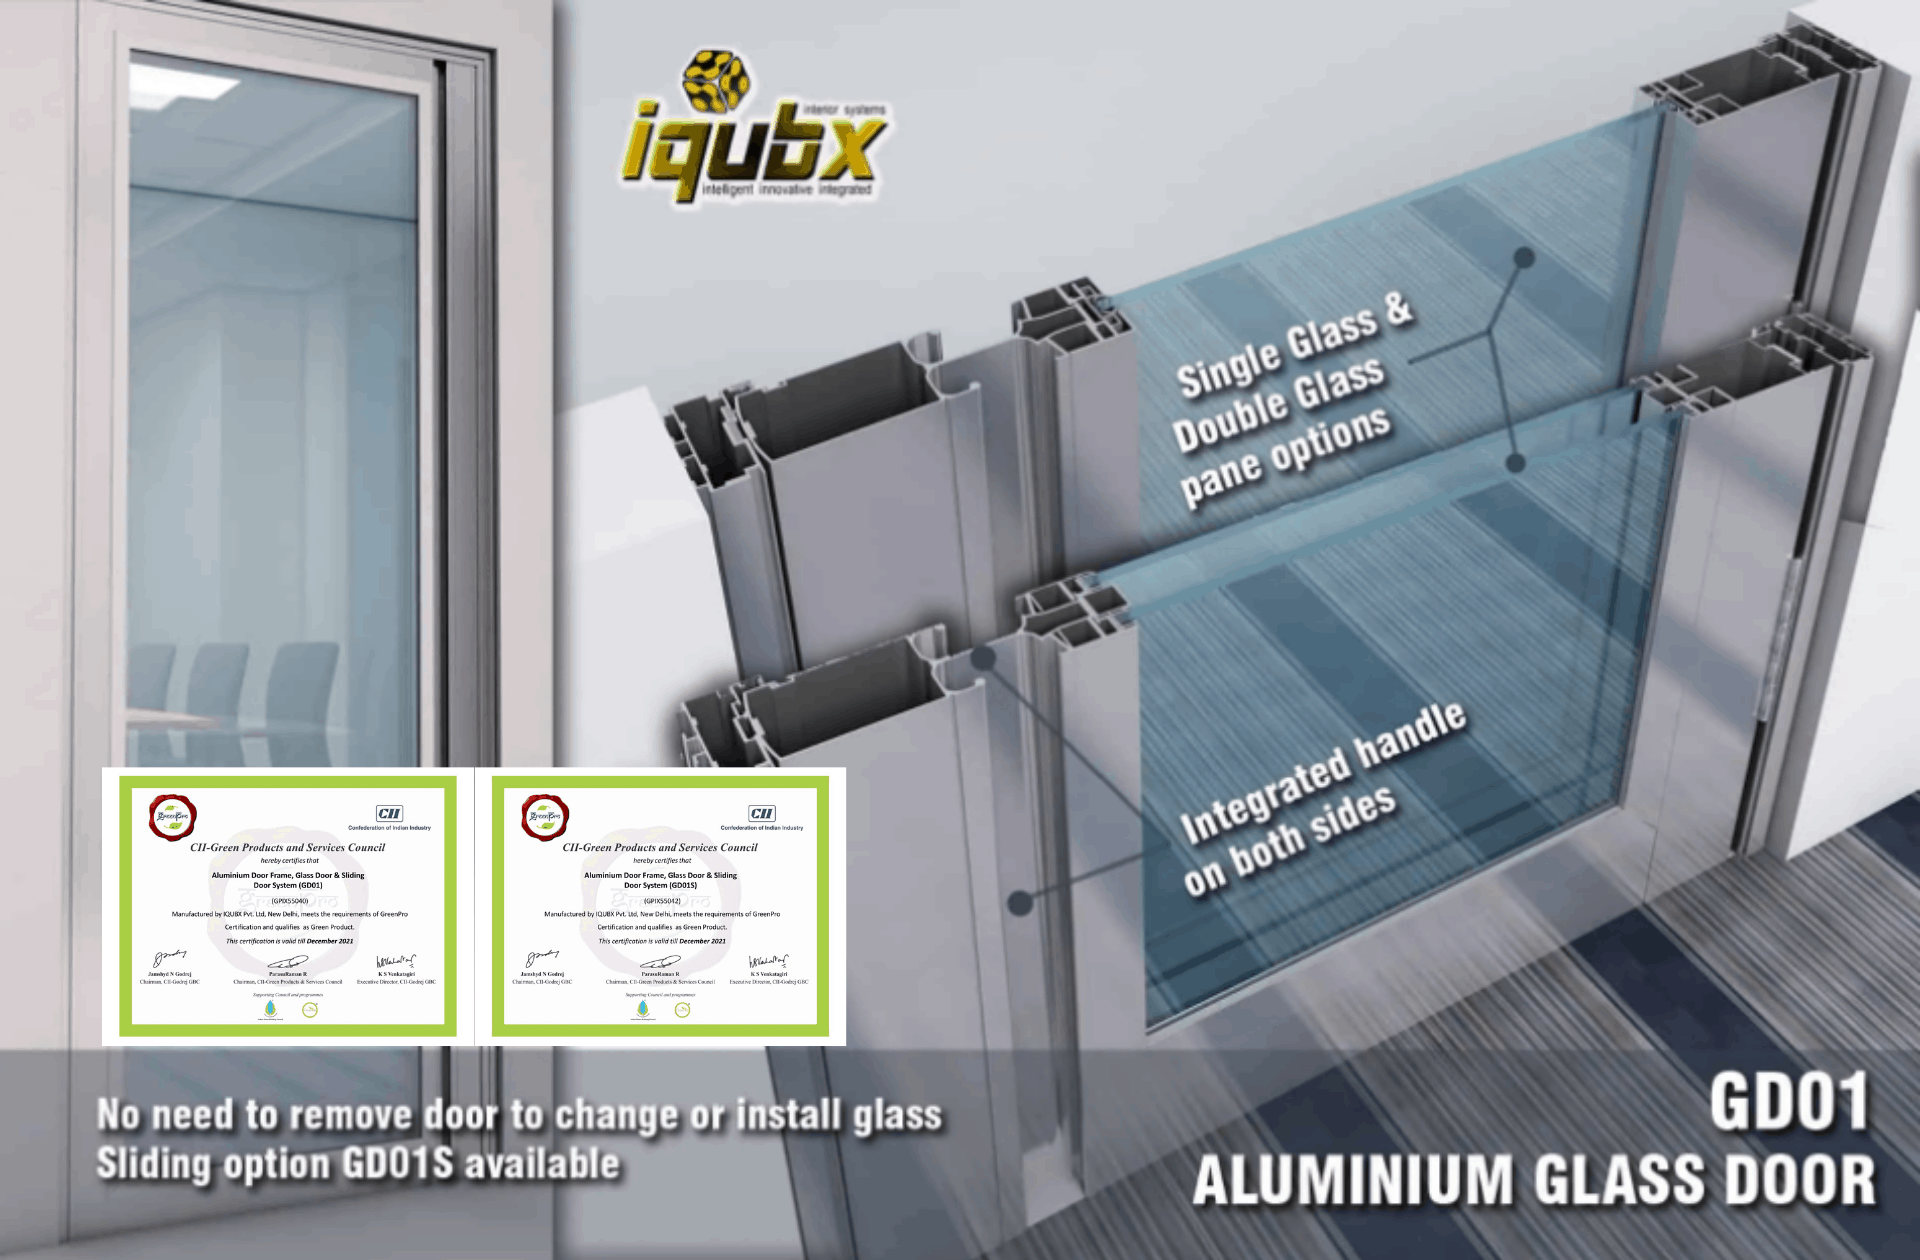 GD01 IQUBX aluminum glass door